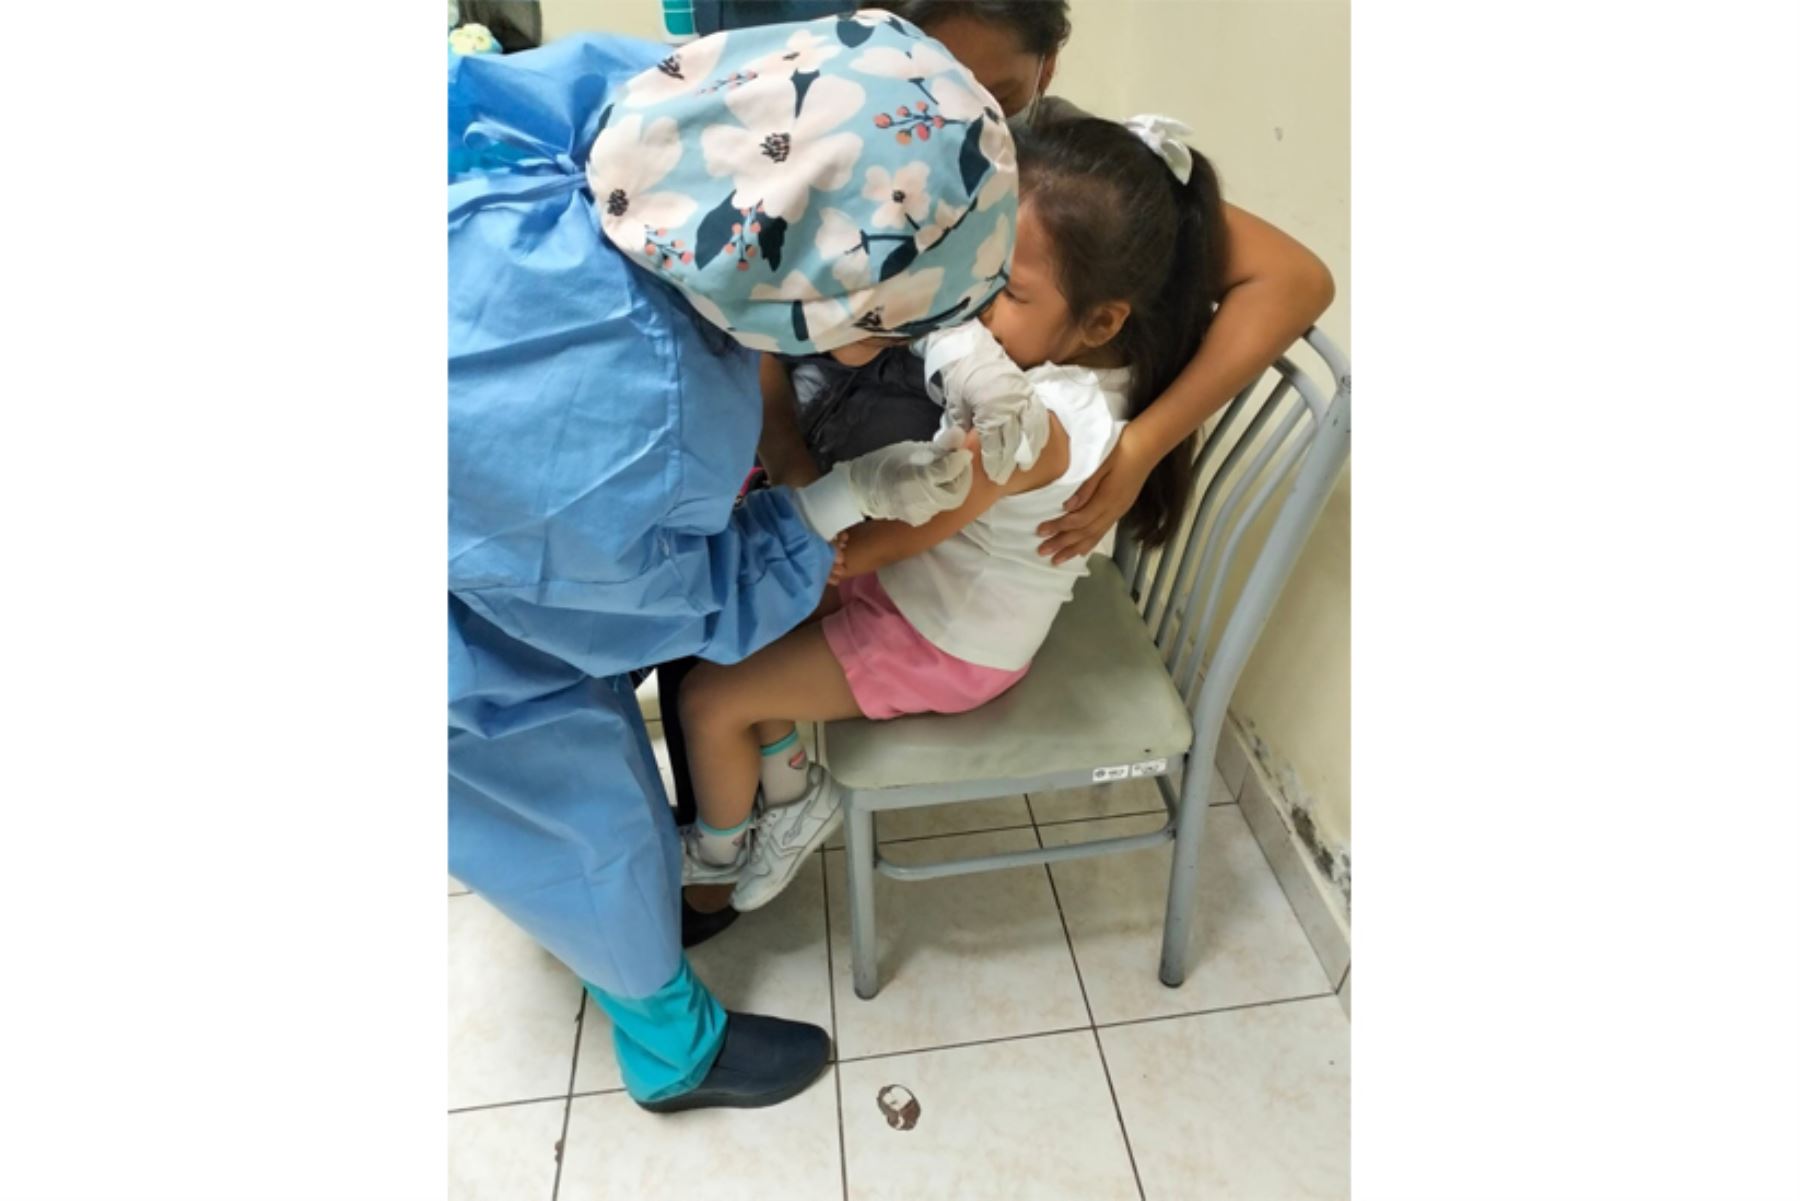 Los menores de 5 años podrán vacunarse mañana sábado 17 de febrero, entre las 8:30 de la mañana y 4 de la tarde. Foto: ANDINA/Difusión